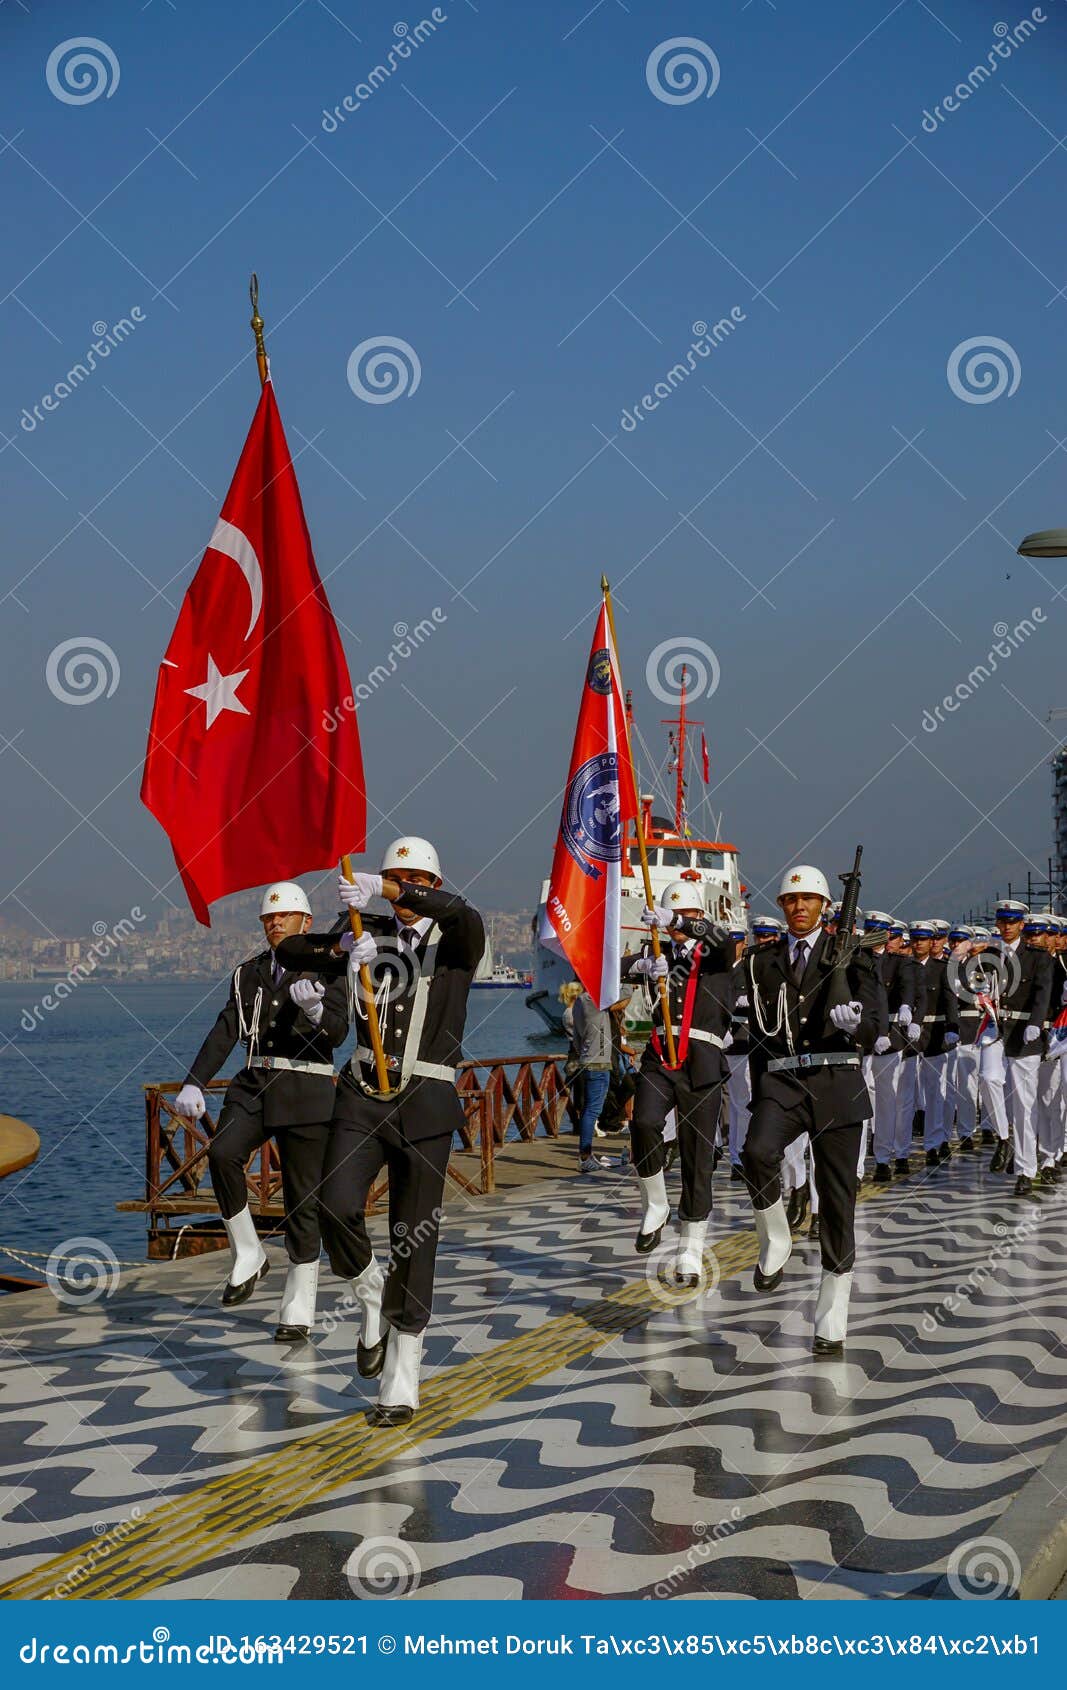 29 Oktober 2019 Izmir Turkei Feierlichkeiten Und Fackelzug Auf Izmir Konak Am 29 Oktober Fur Den Tag Der Republik Redaktionelles Foto Bild Von Ankara Feiertag 163429521